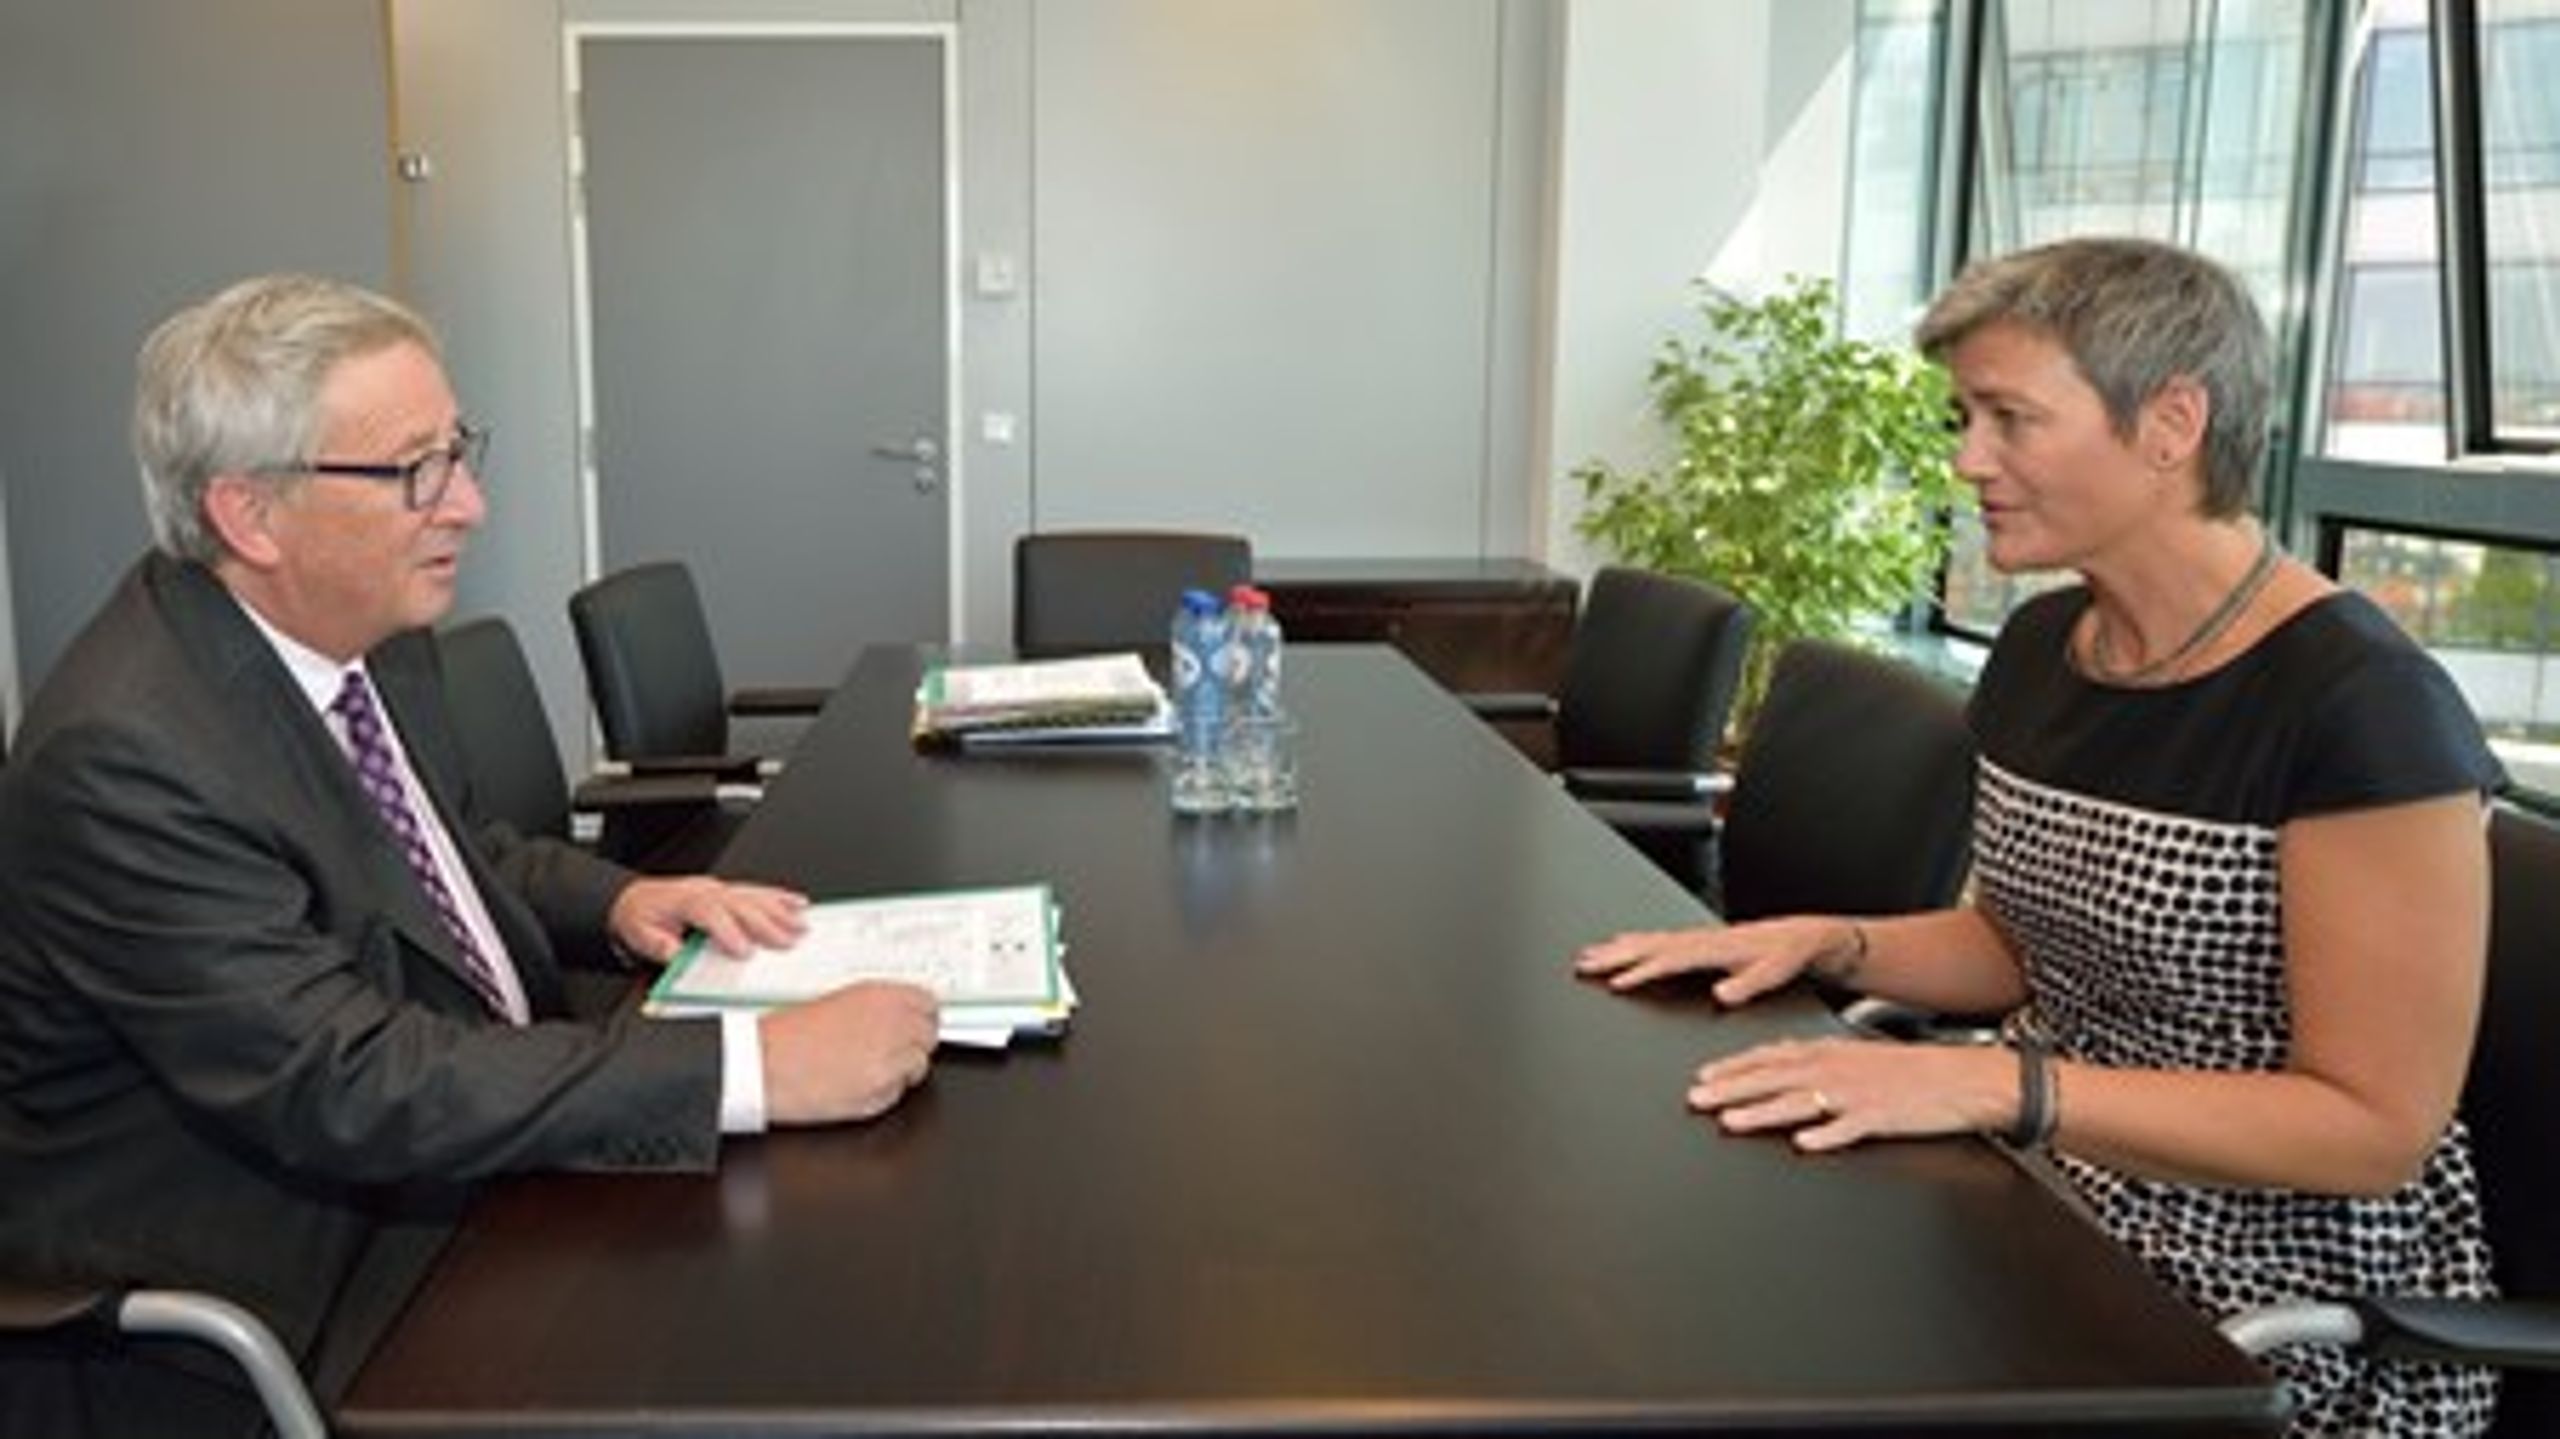 Danmarks næste EU-kommissær, Margrethe Vestager, var onsdag til jobsamtale med sin nye chef, kommissionsformand Jean-Claude Juncker. Hun støtter hans visioner for en ny Kommission.